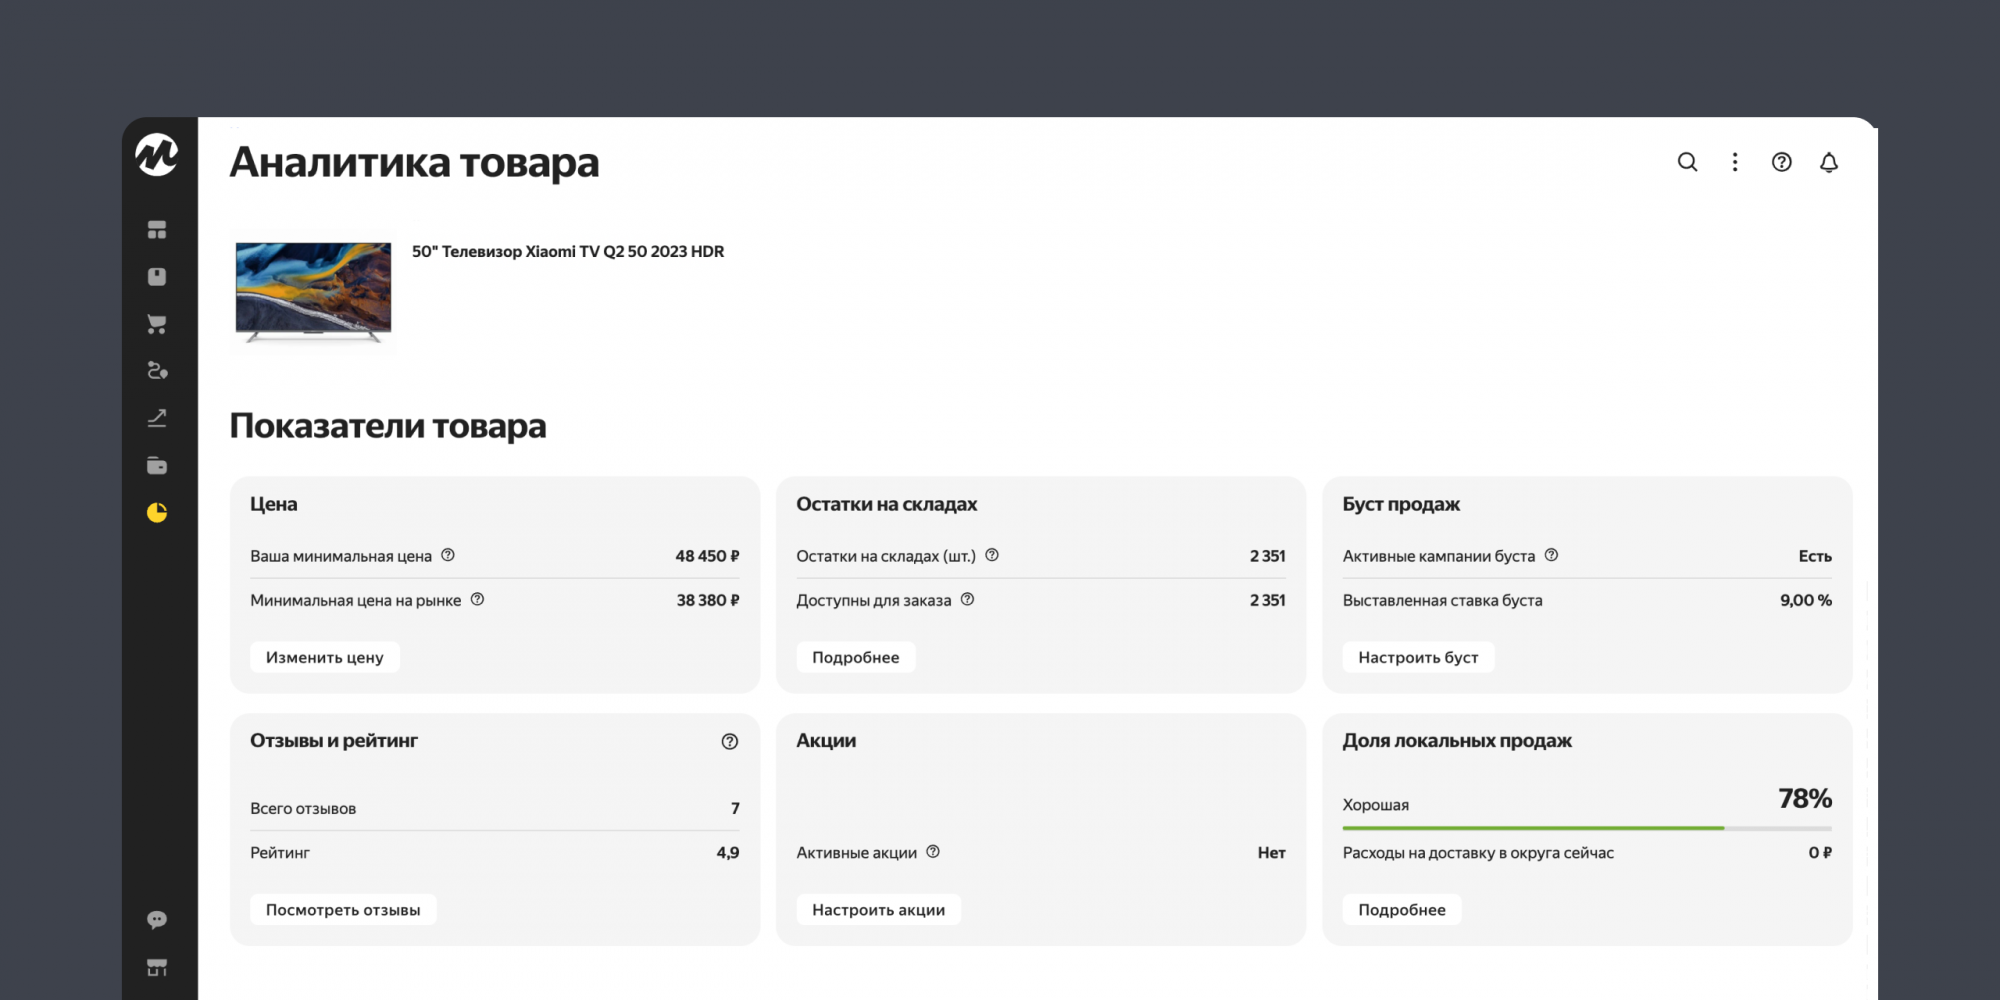 Яндекс Маркет представил новый отчет «Товарная аналитика»